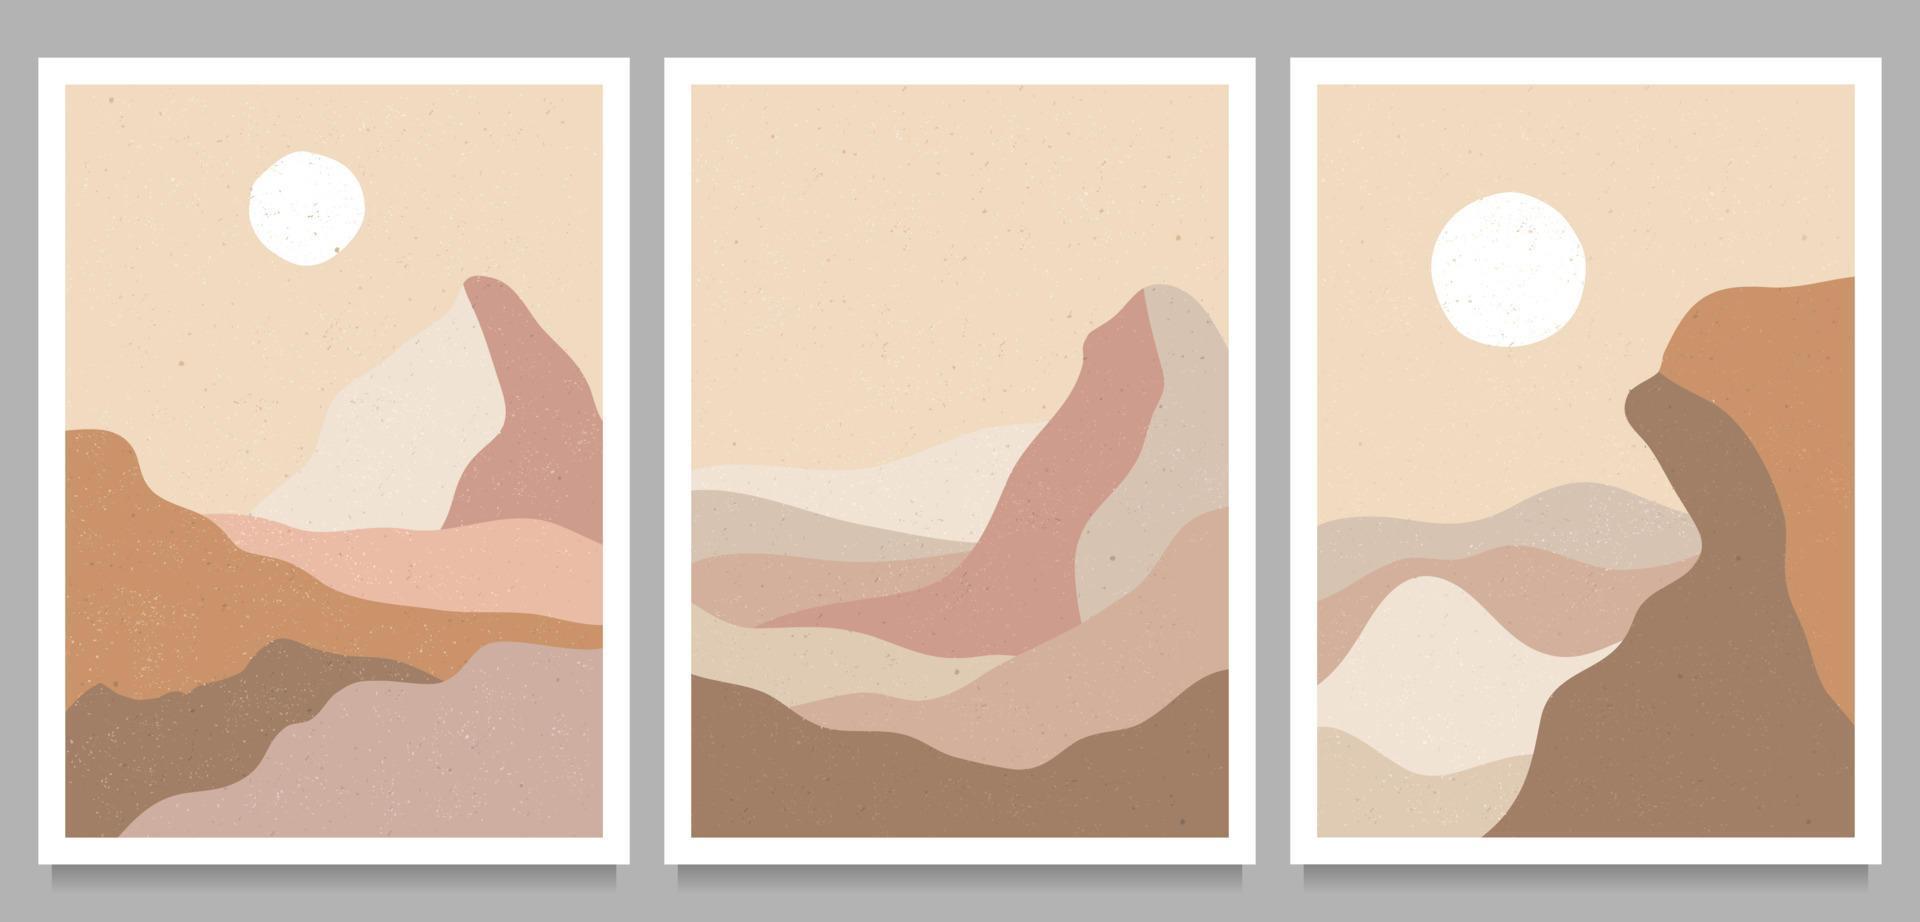 montaña, bosque, colina, ola, sol y luna en un gran set. impresión de arte minimalista moderno de mediados de siglo. paisaje de fondos estéticos contemporáneos abstractos. ilustraciones vectoriales de moda vector